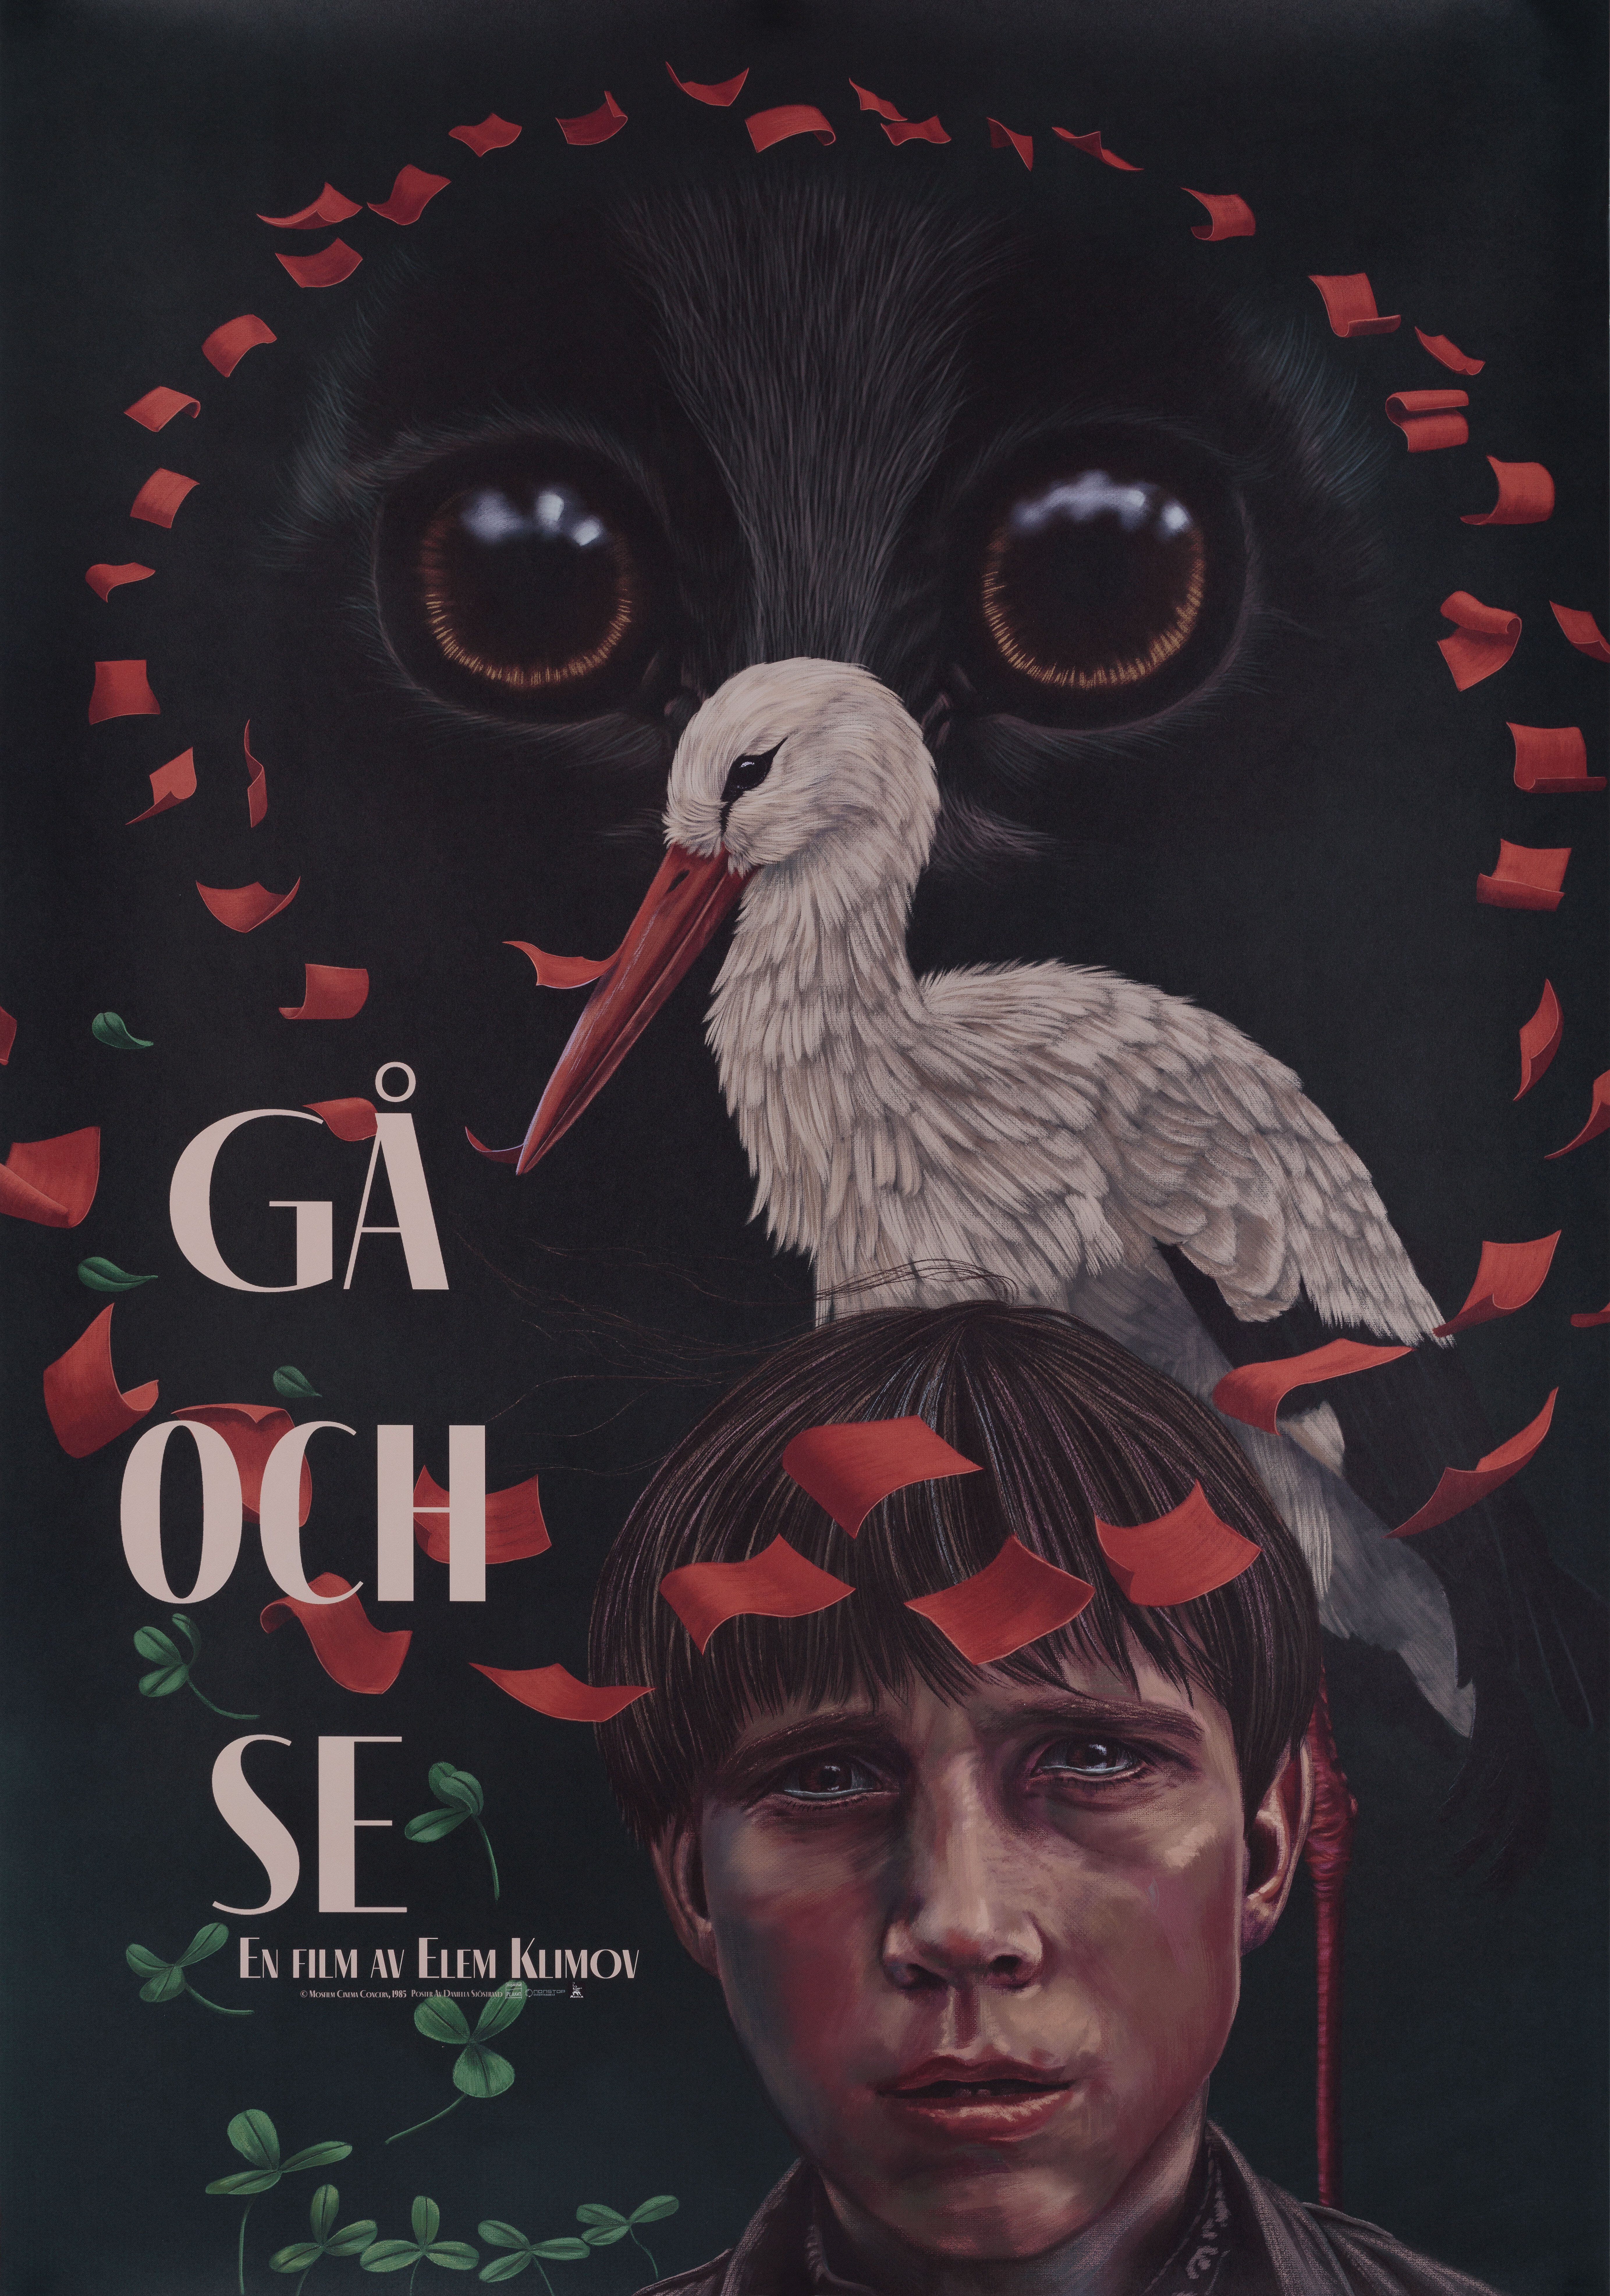 Иди и смотри (режиссёр Элем Климов, 1985), шведский постер к фильму, автор Даниэлла Шостранд, 2022 год